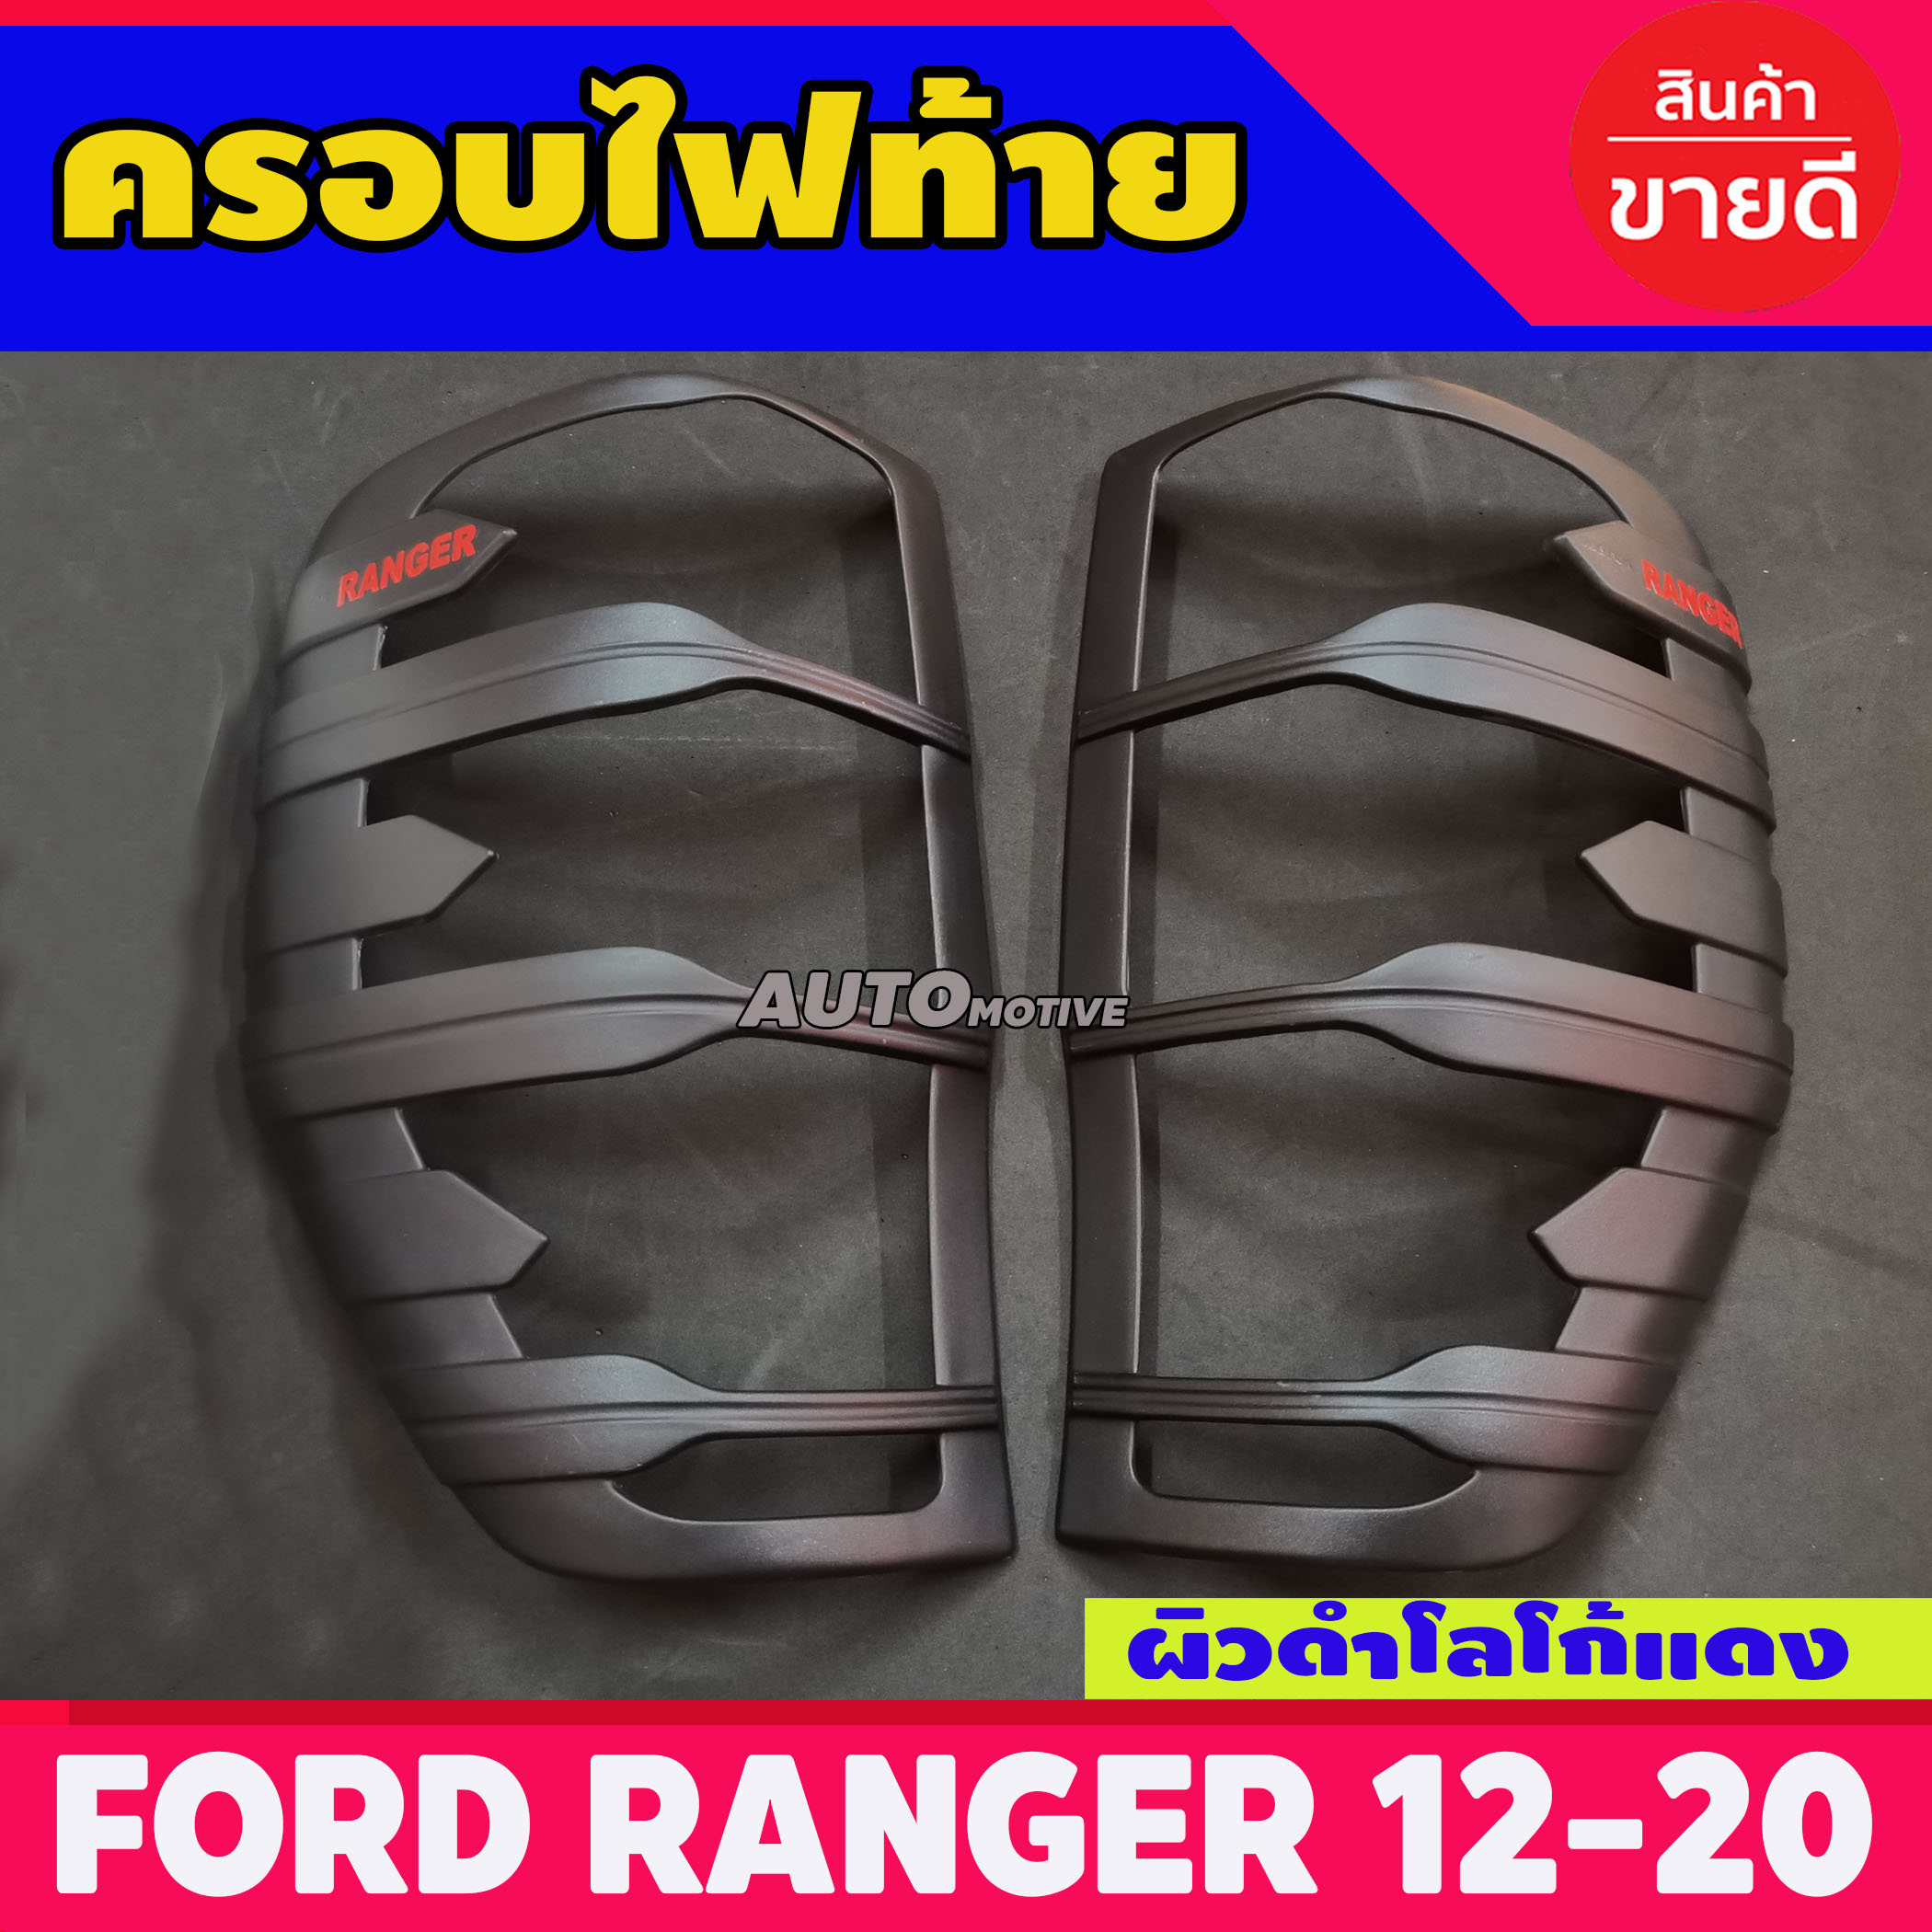 ครอบไฟท้าย Ford Ranger แรนเจอร์ 2012-2020 ผิวดำ+โลโก้สีแดง (A)